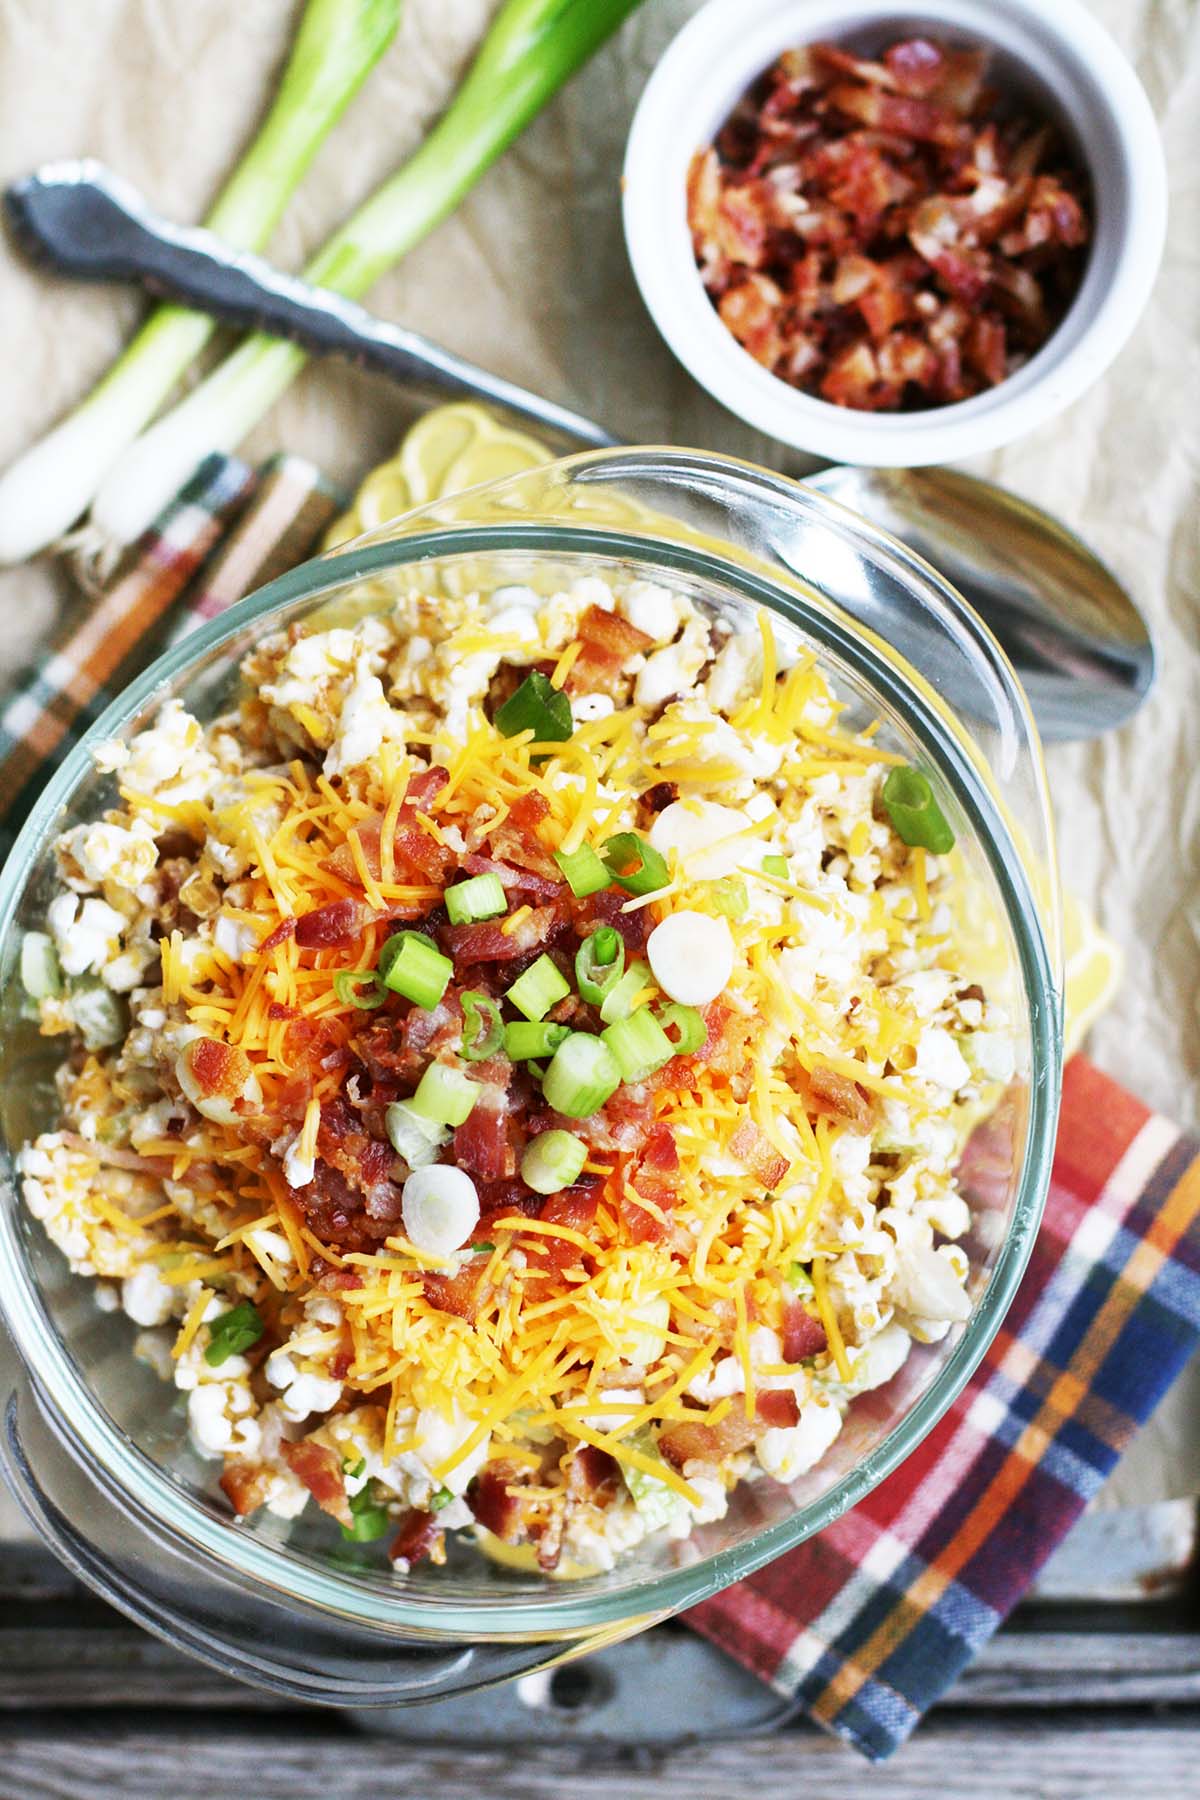 Insalata di popcorn: i popcorn prendono il posto della pasta in questa insalata da picnic e amante del potluck.